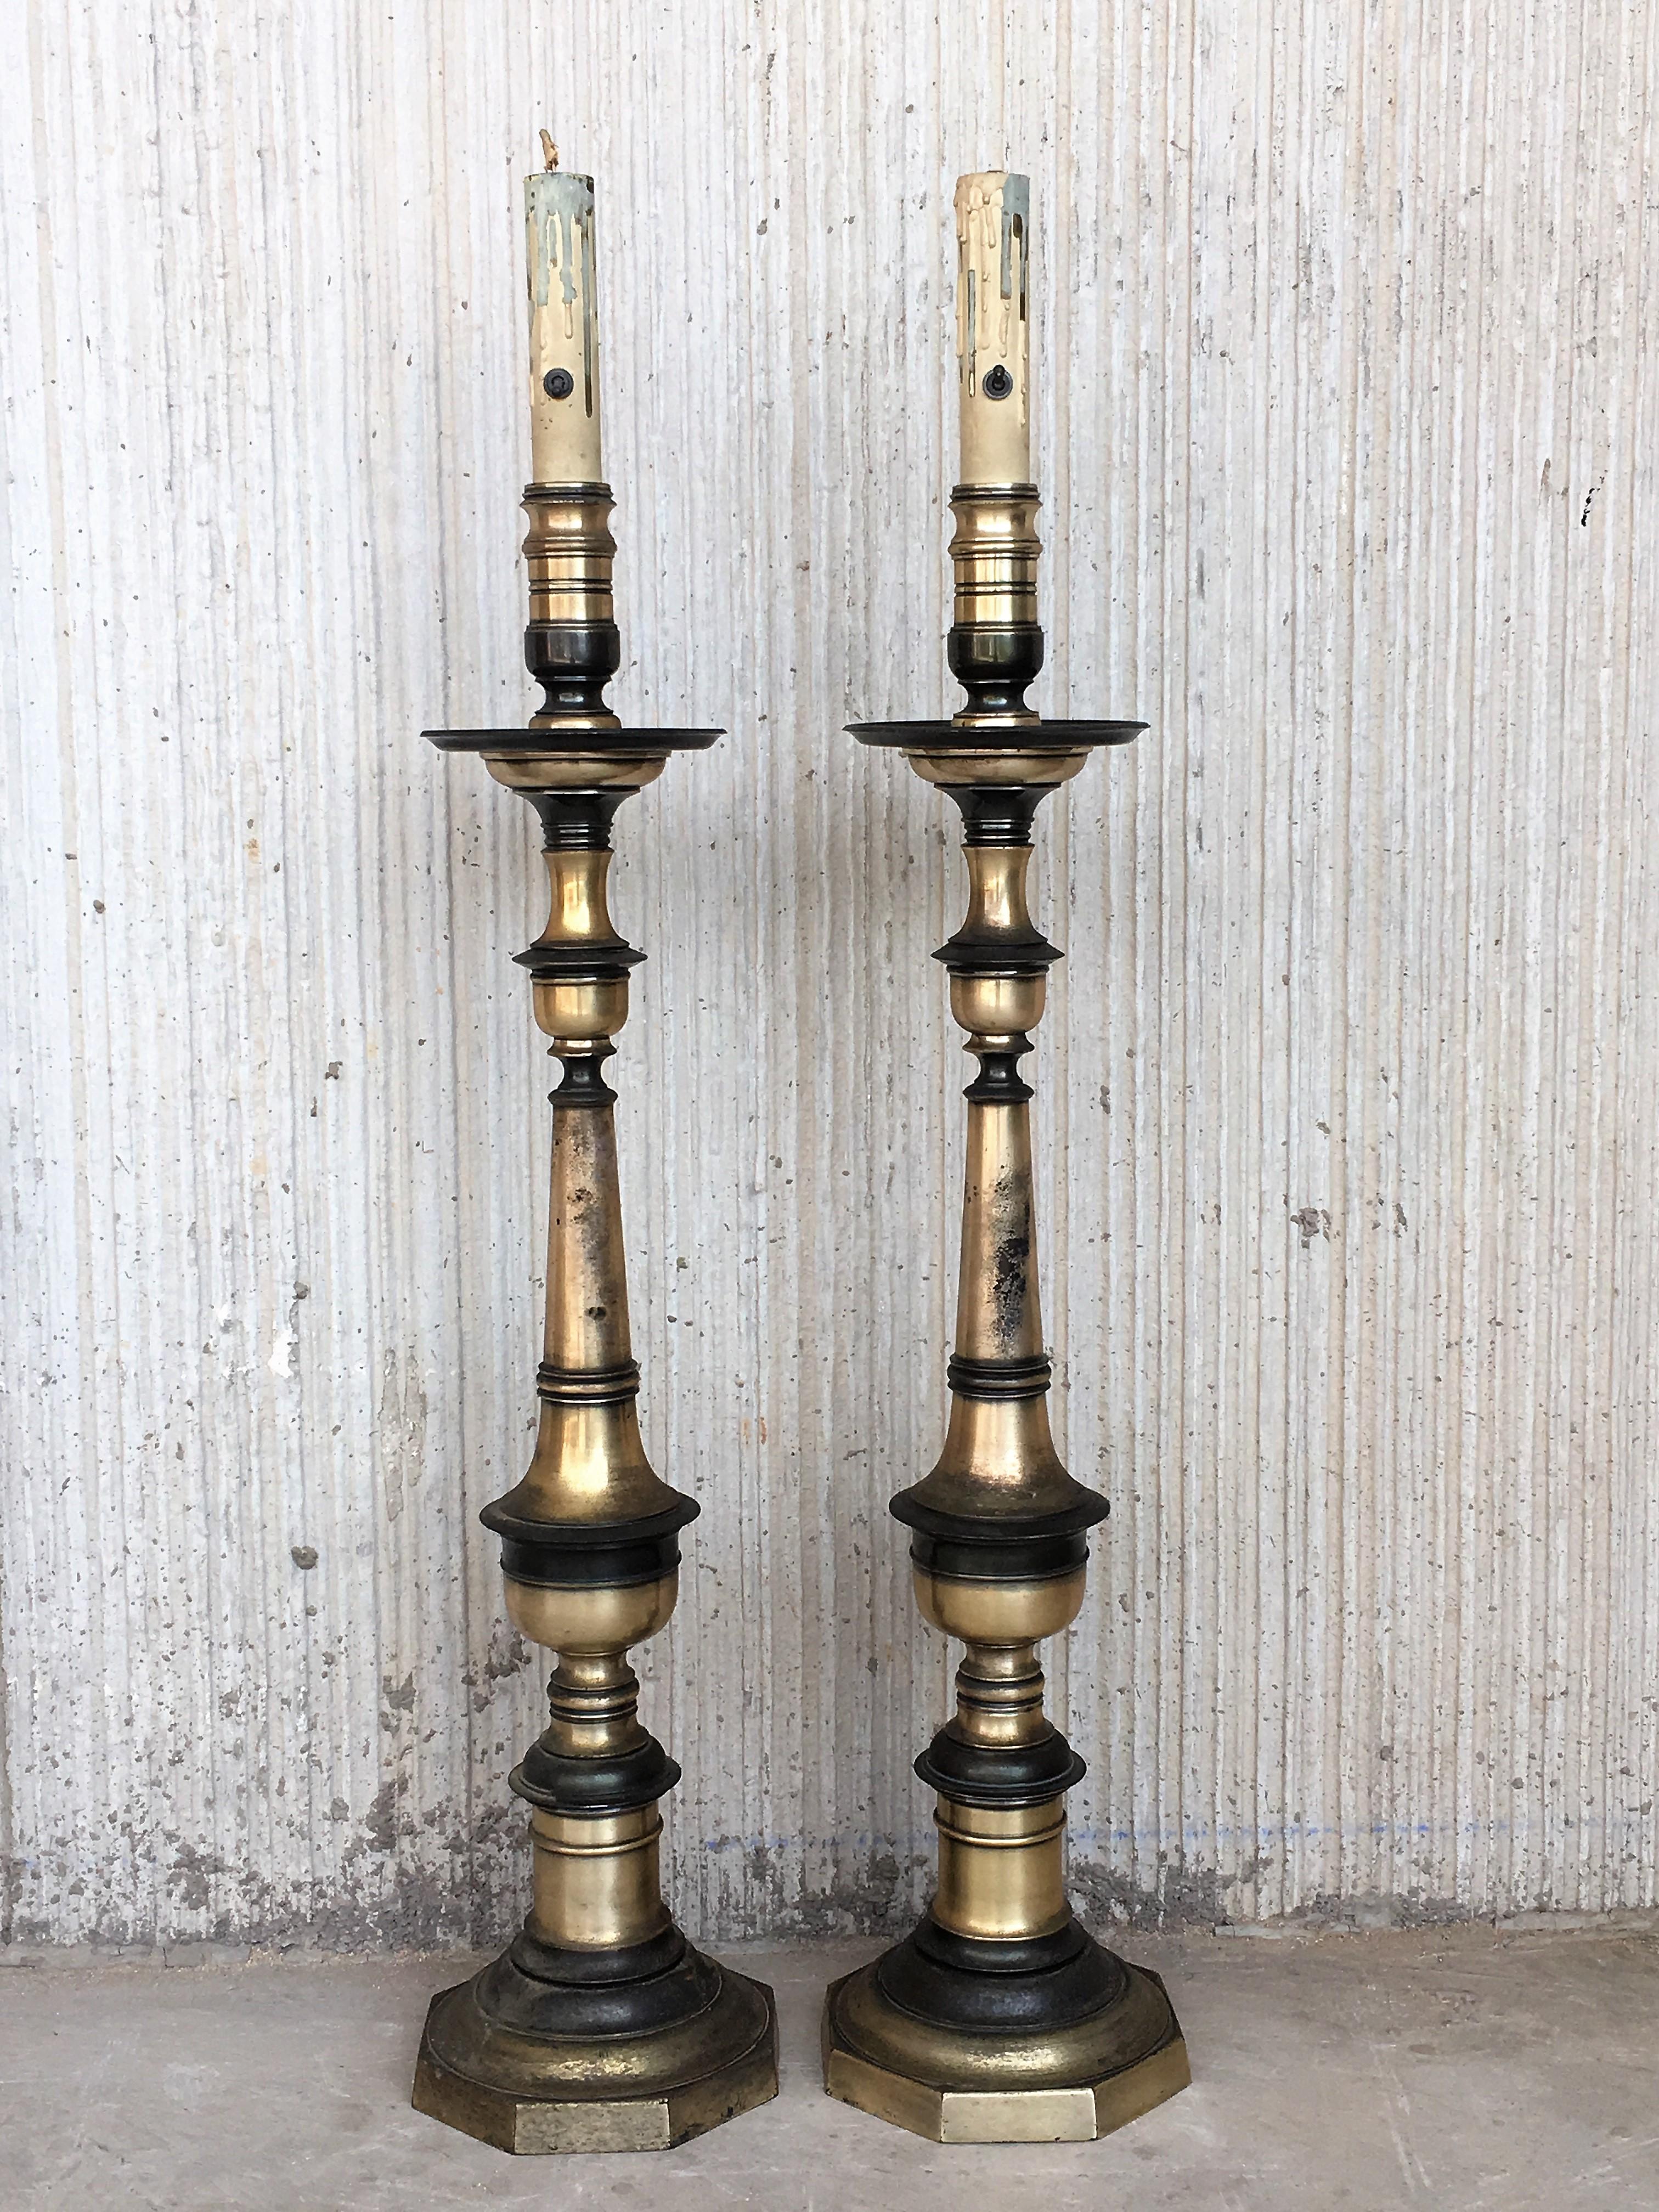 Ein Paar bronzene Pricket-Lampen im Renaissance-Stil.
Diese großen Pricket-Lampen bieten das perfekte Gleichgewicht für Räume mit großem Umfang und Wirkung.
Neu verkabelt.